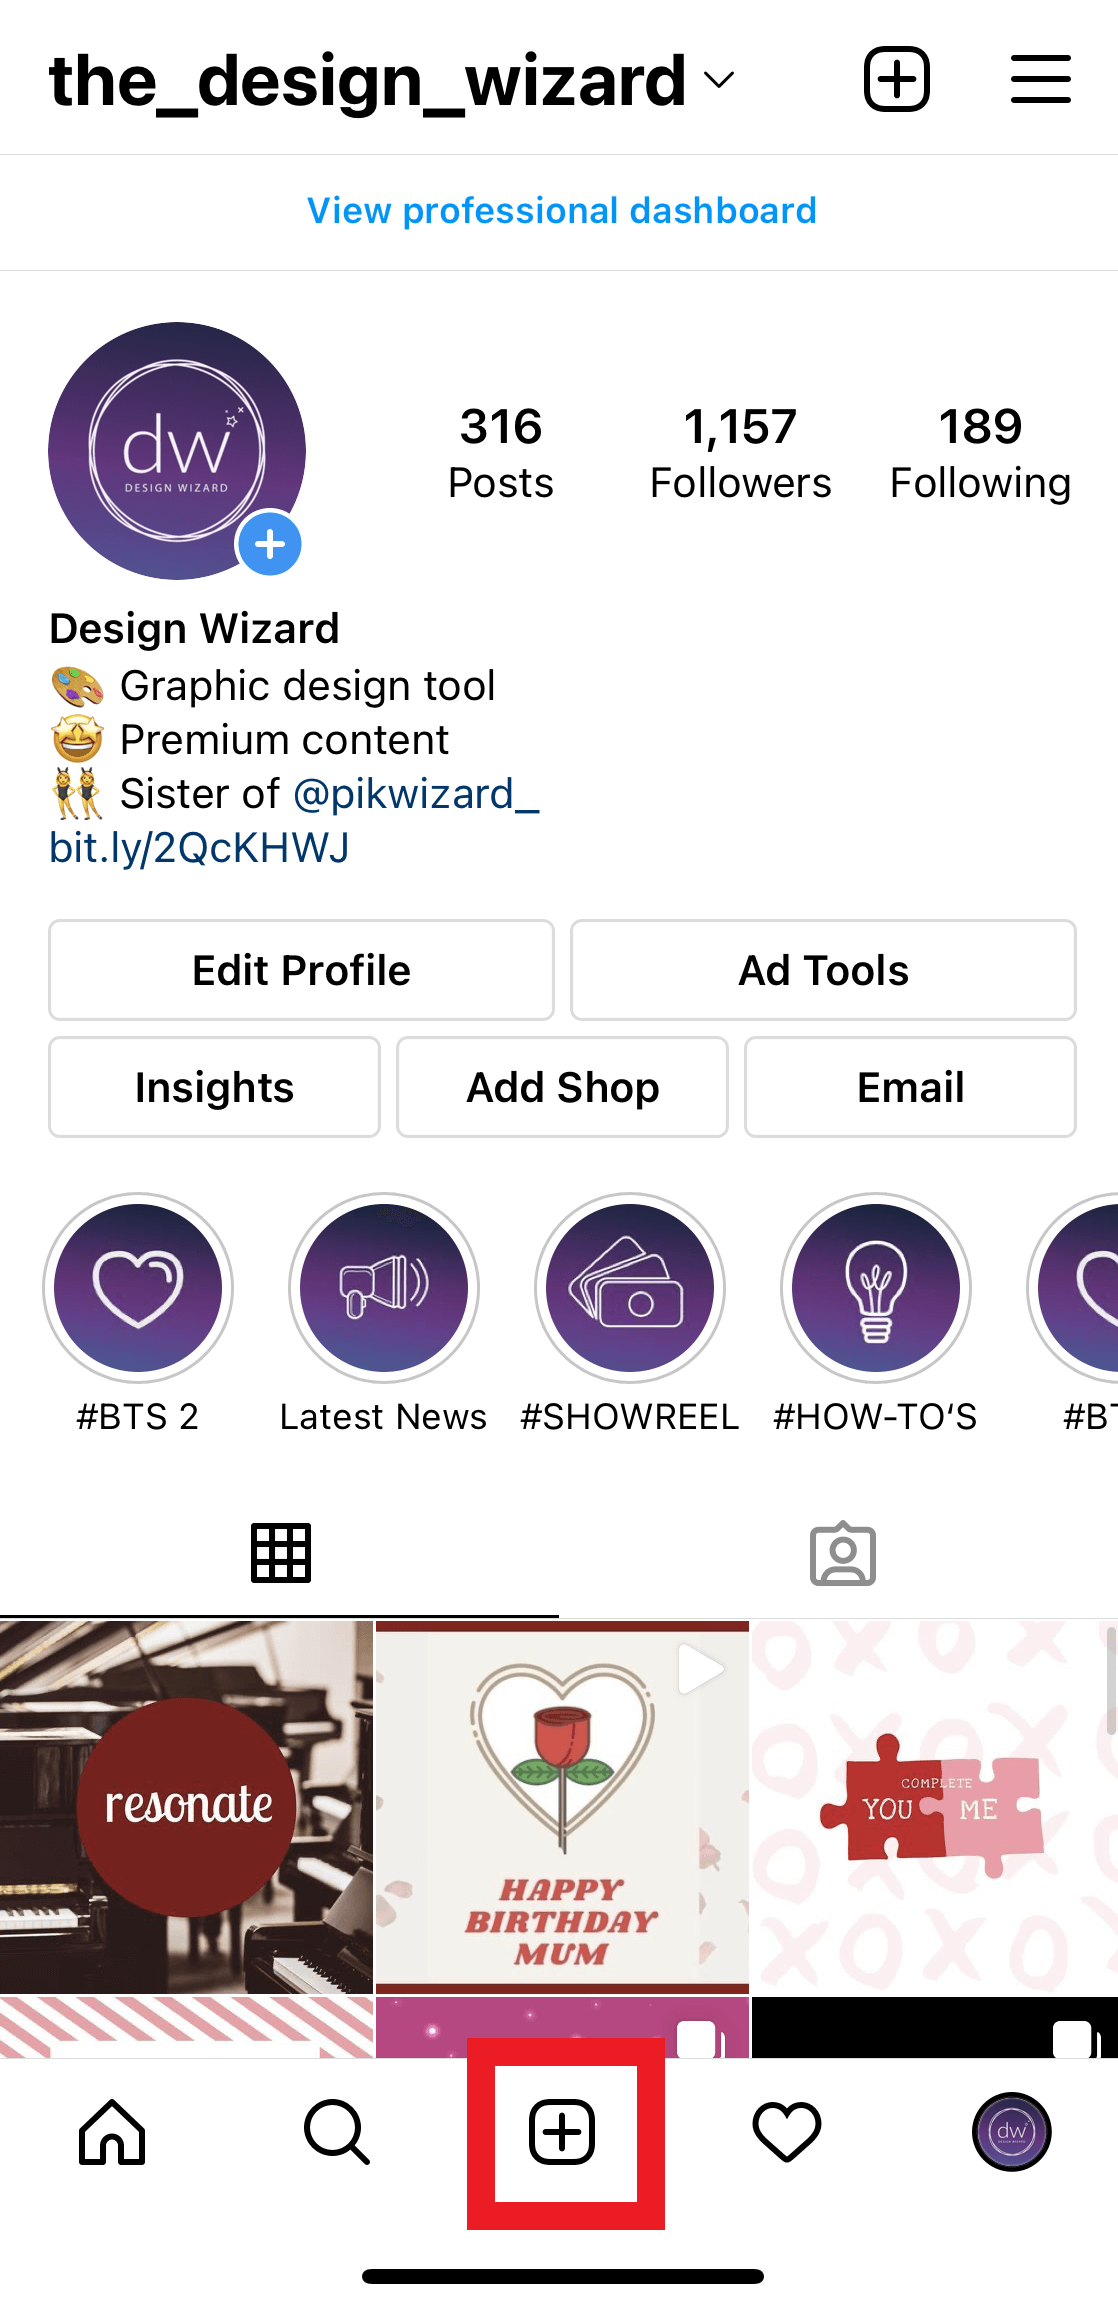 Design Wizard Instagram-Seite - Ein Leitfaden, wie du dein neues Video auf Instagram hochladen kannst - Bild